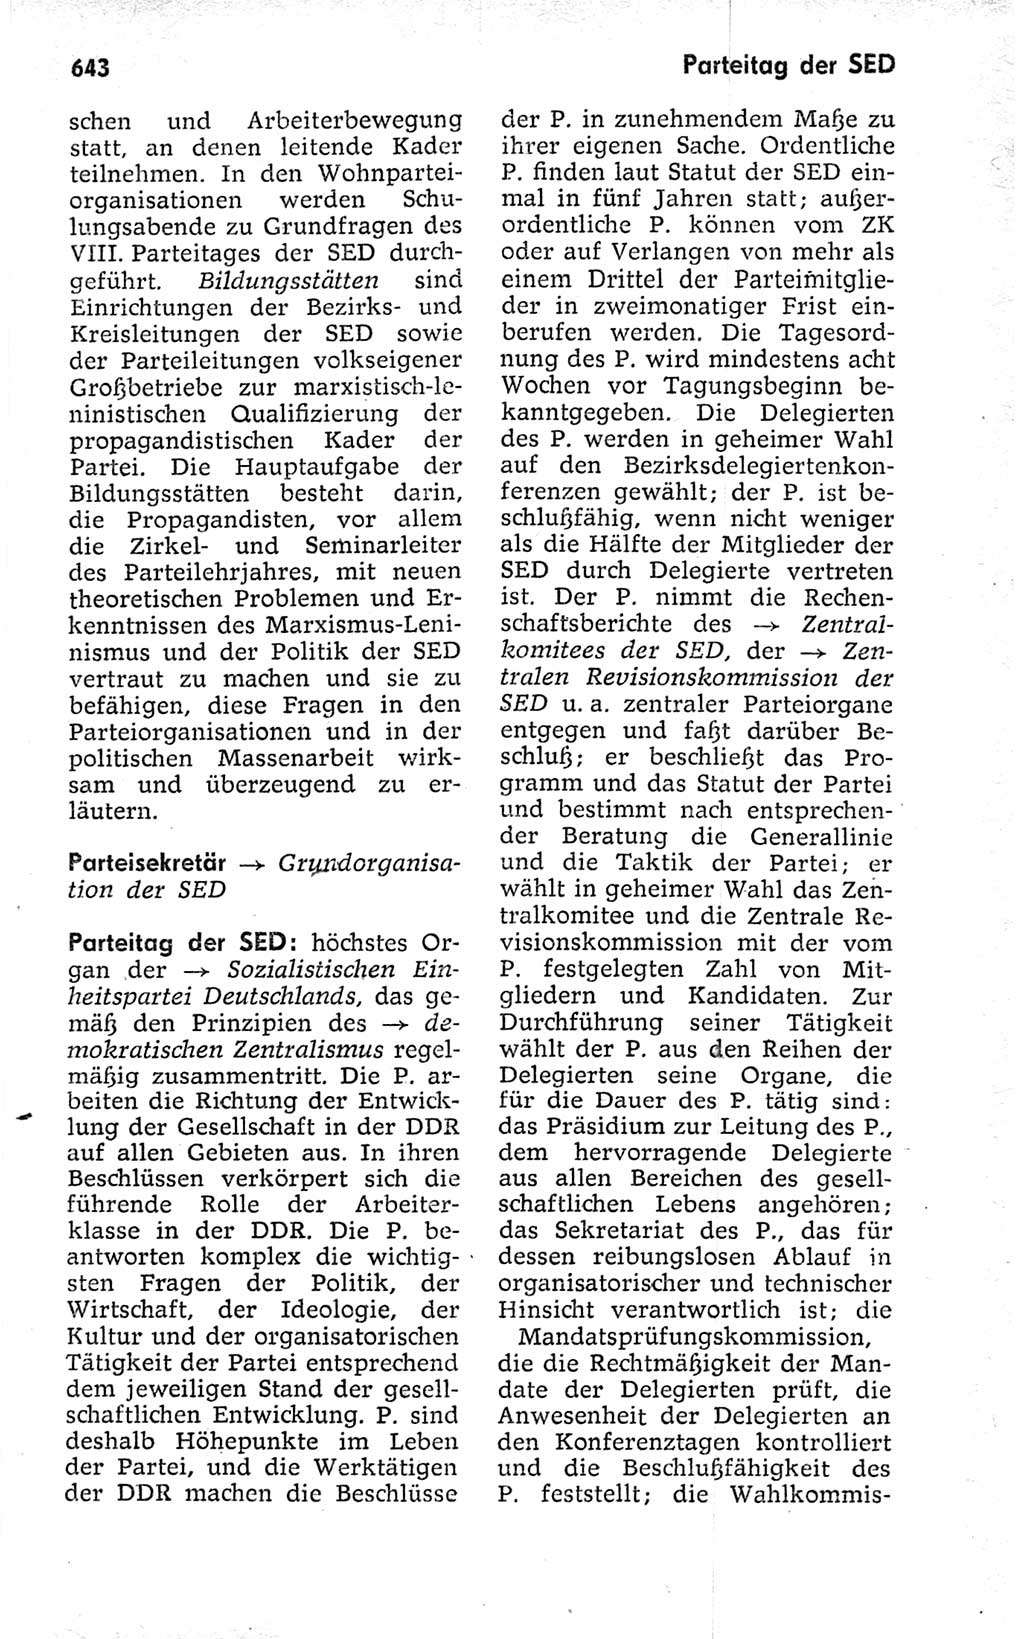 Kleines politisches Wörterbuch [Deutsche Demokratische Republik (DDR)] 1973, Seite 643 (Kl. pol. Wb. DDR 1973, S. 643)